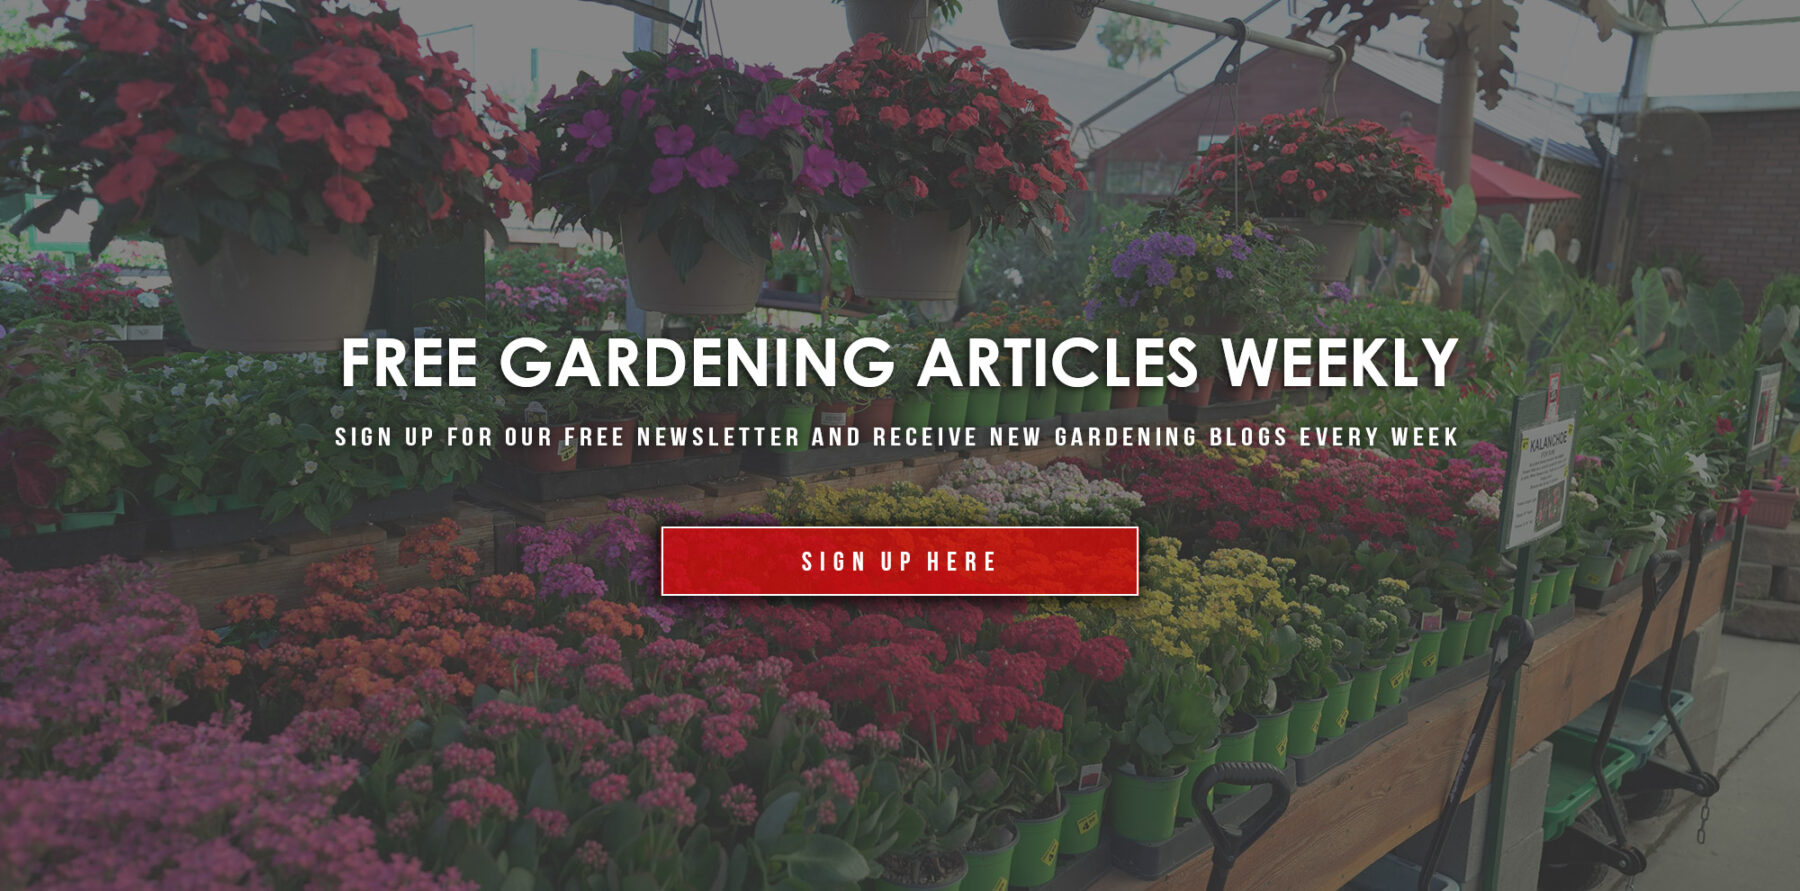 Garden Blog